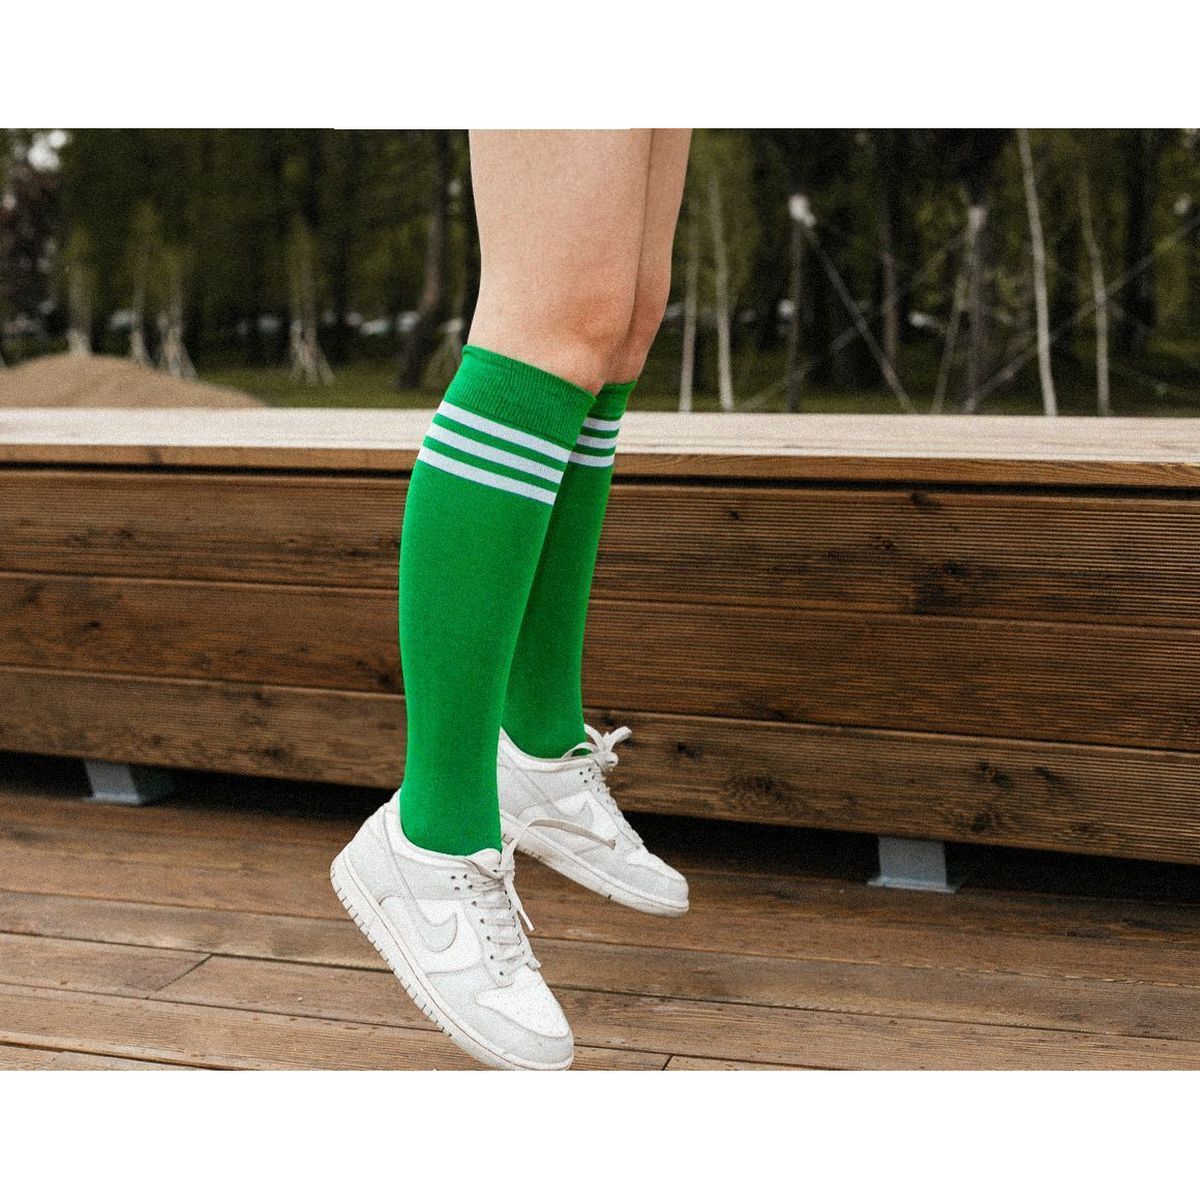 Гольфы мужские St. Friday Socks 431-9 зеленые 38-41